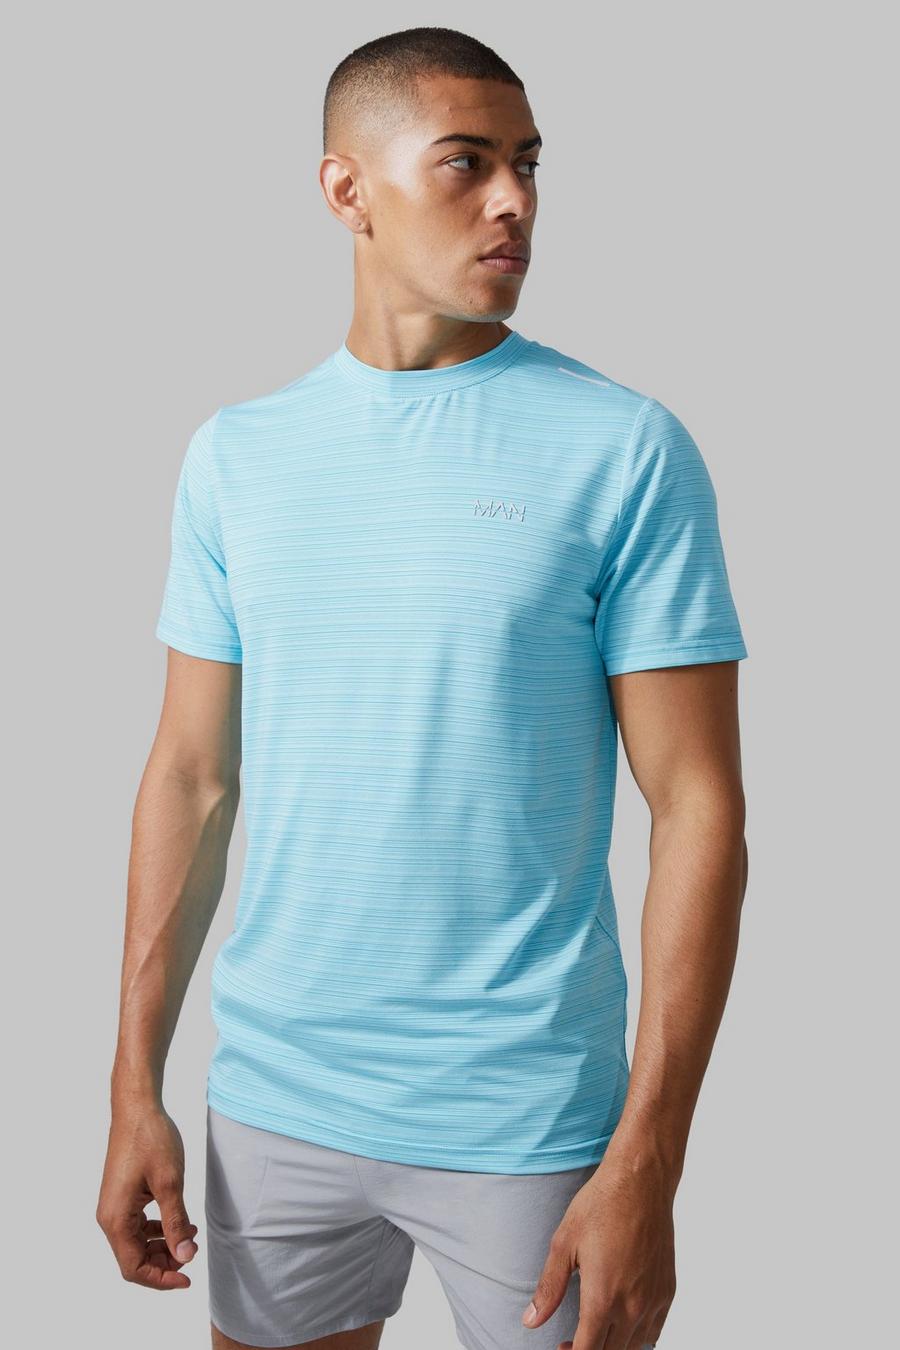 Man Active Lightweight Performance T-Shirt, Light blue